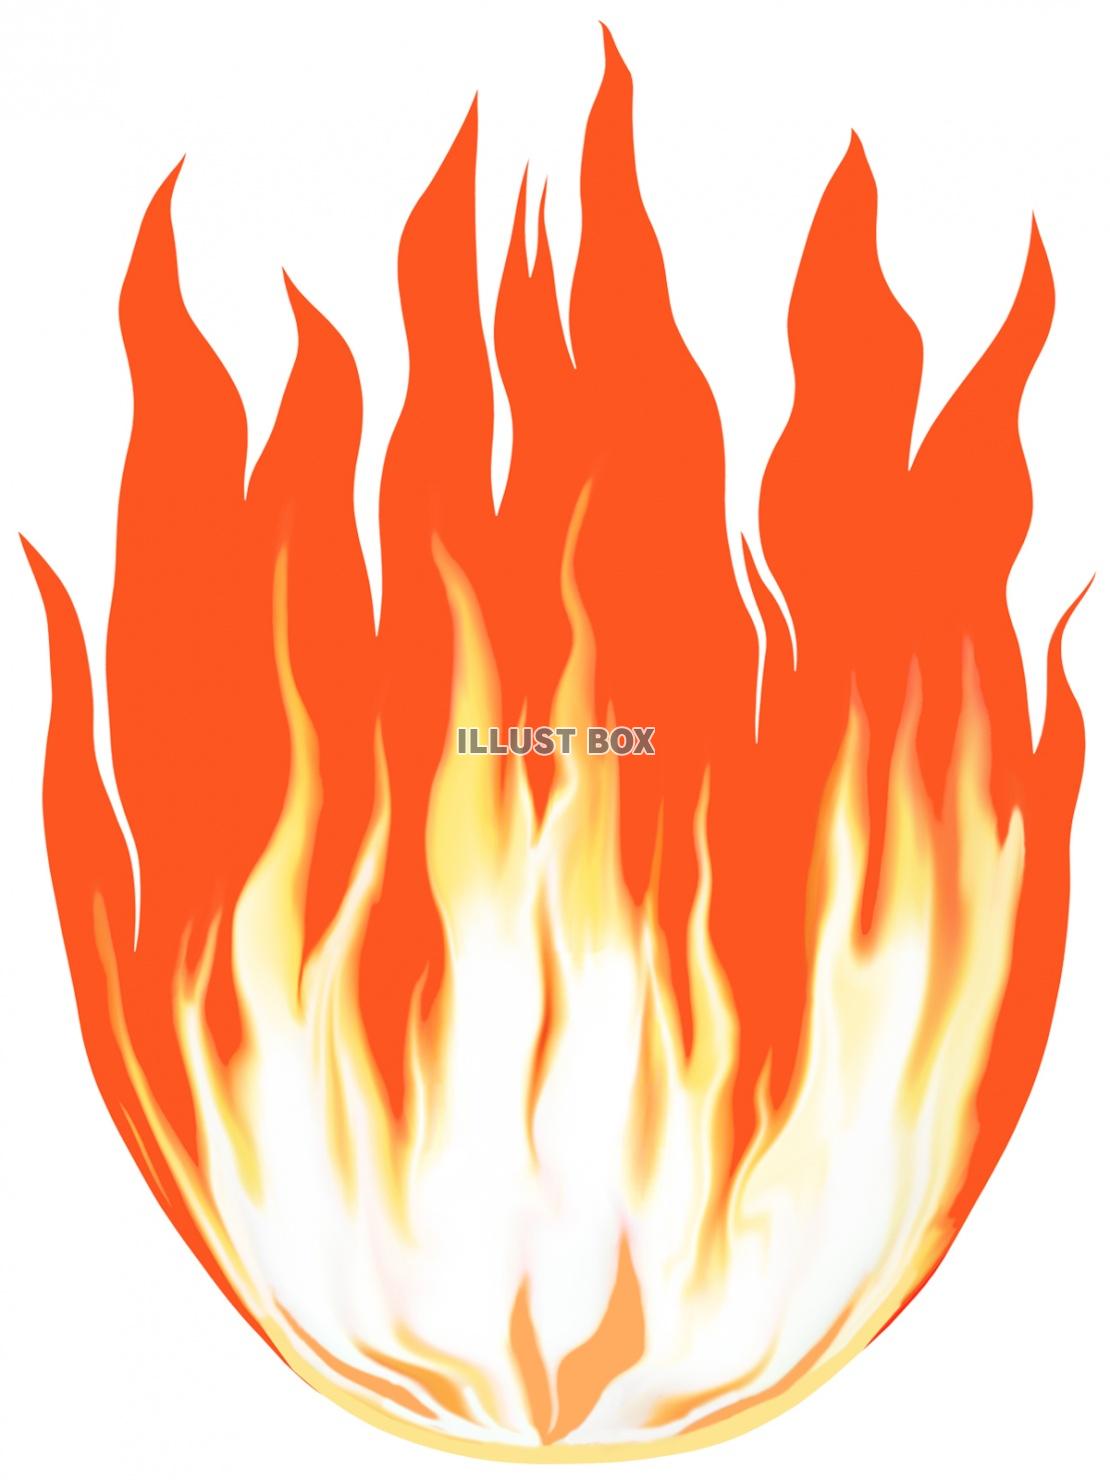 火炎背景素材イラストシンプル壁紙画像